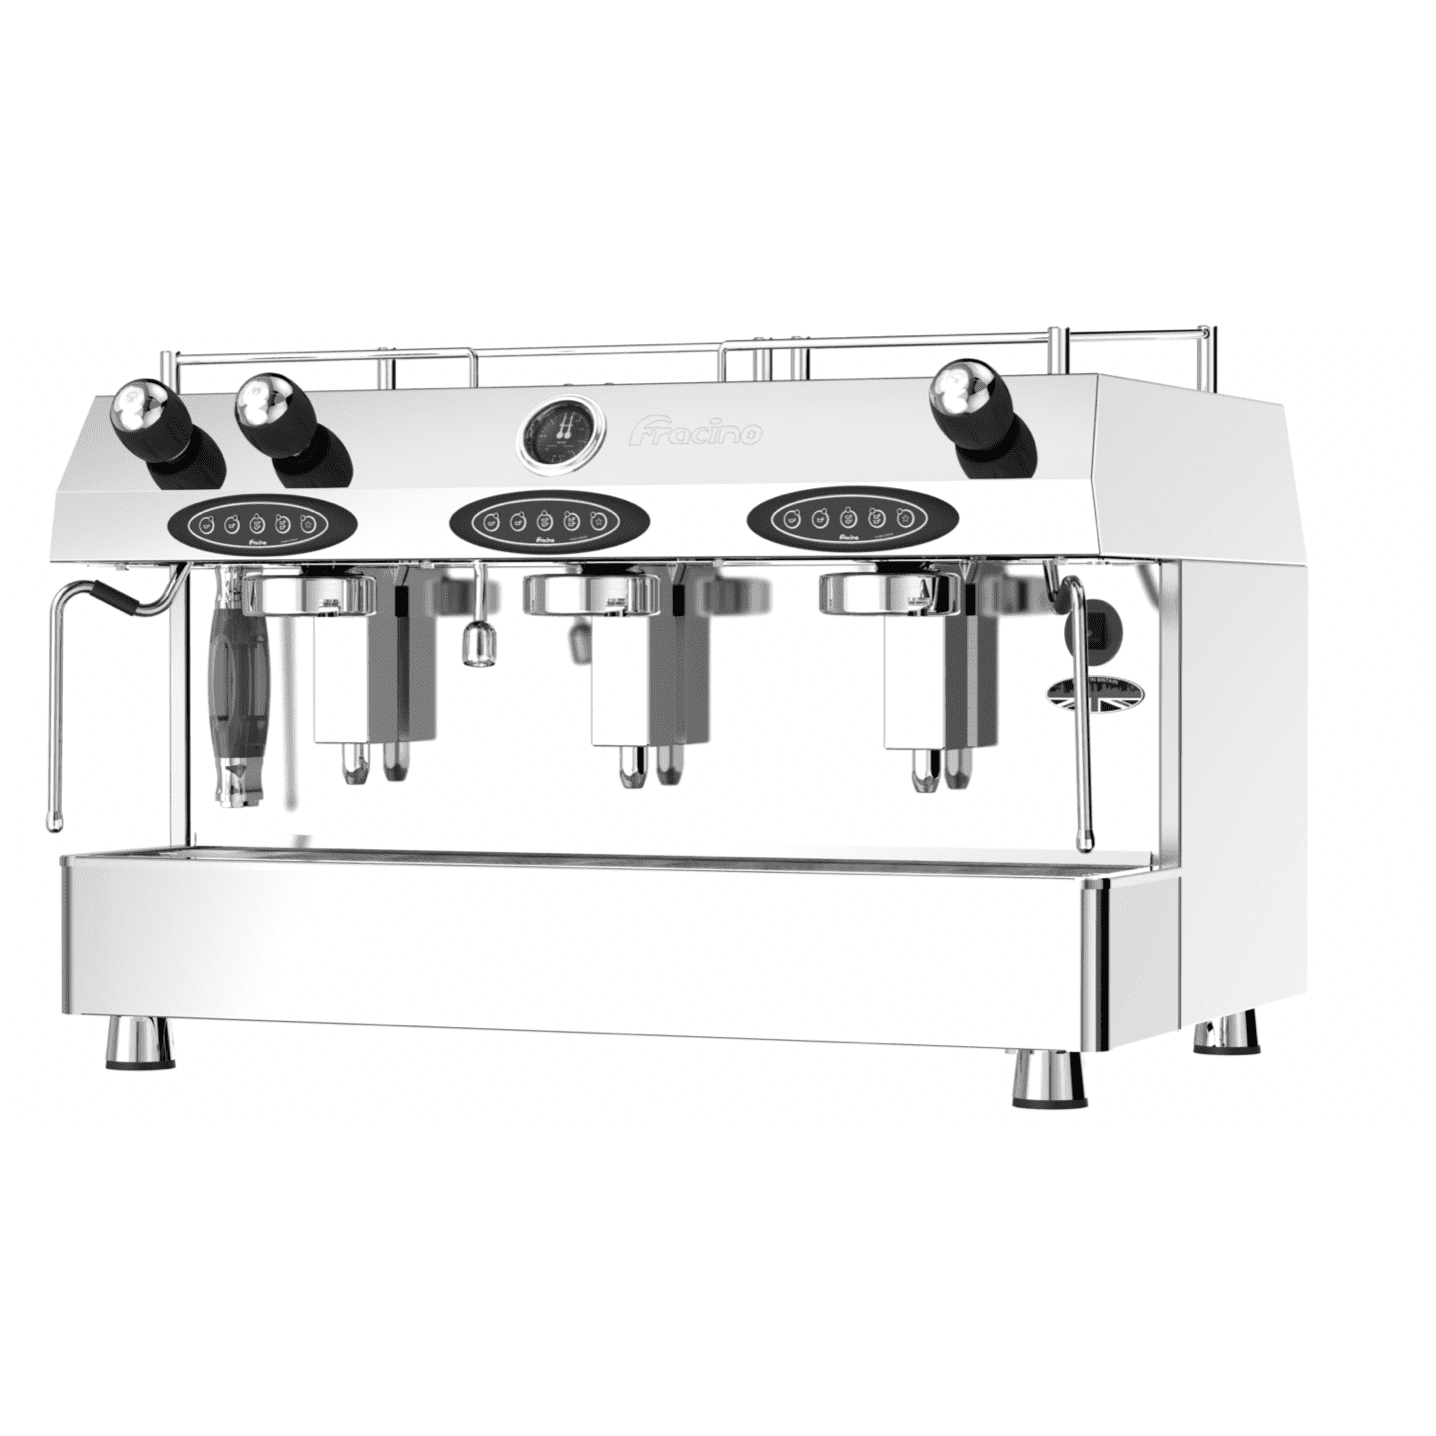 Fracino Contempo Group 3 Semi Automatic Commercial Espresso Coffee Machine